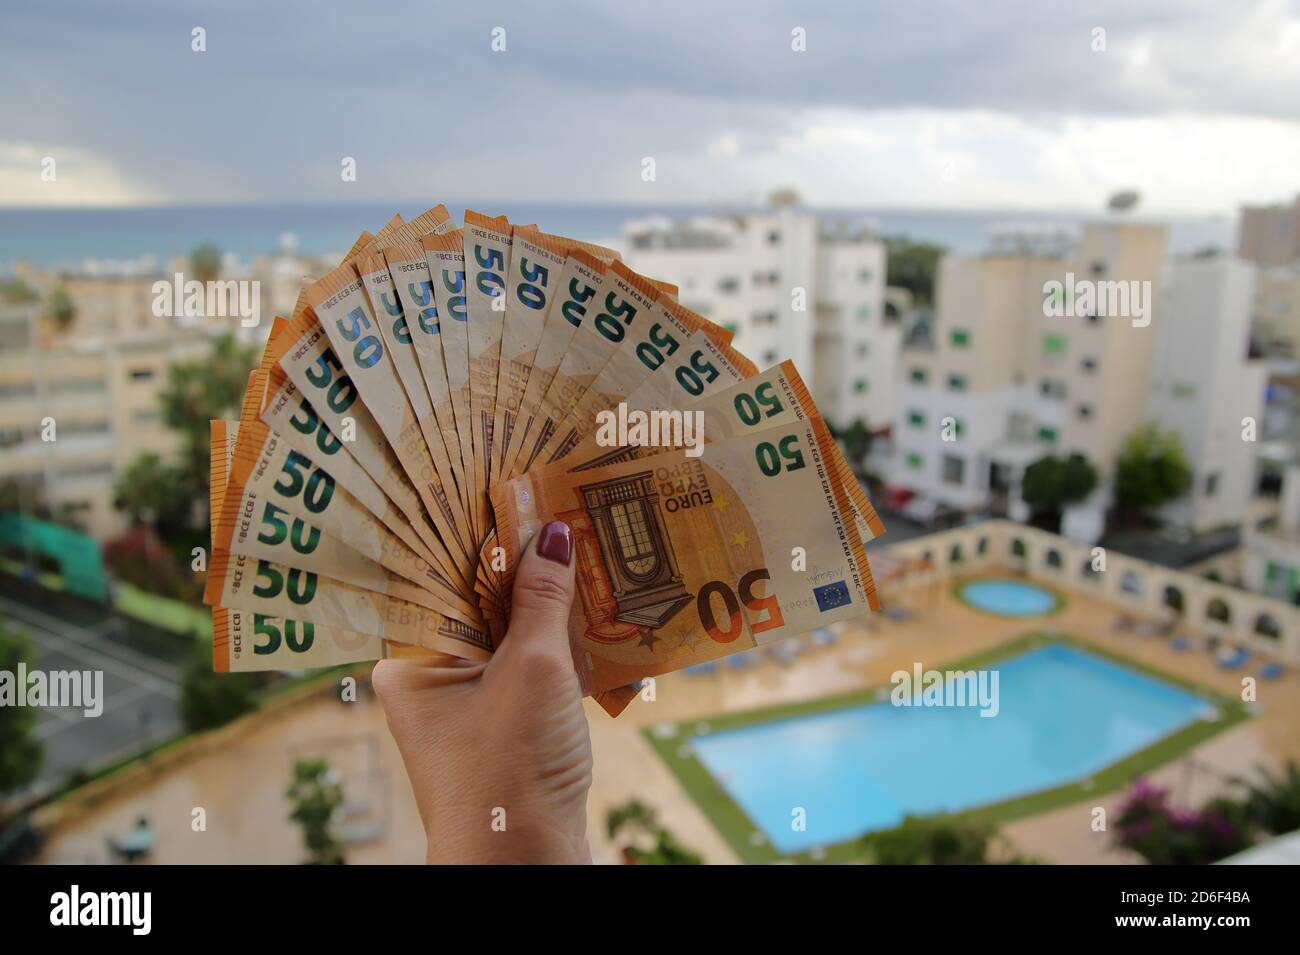 molte banconote da 50 euro in mano femminile da vicino, in background piscina, resort vacanze area urbana, città Foto Stock